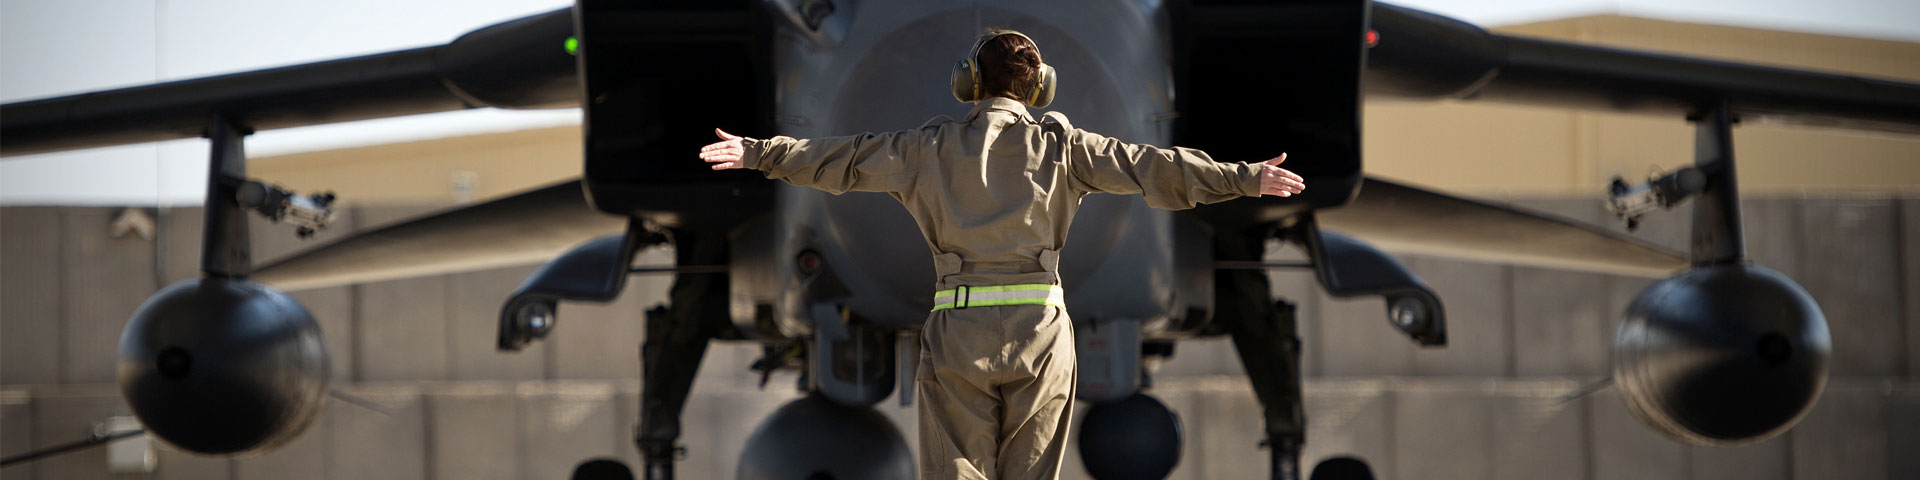 An aircraft engineer guiding an RAF jet